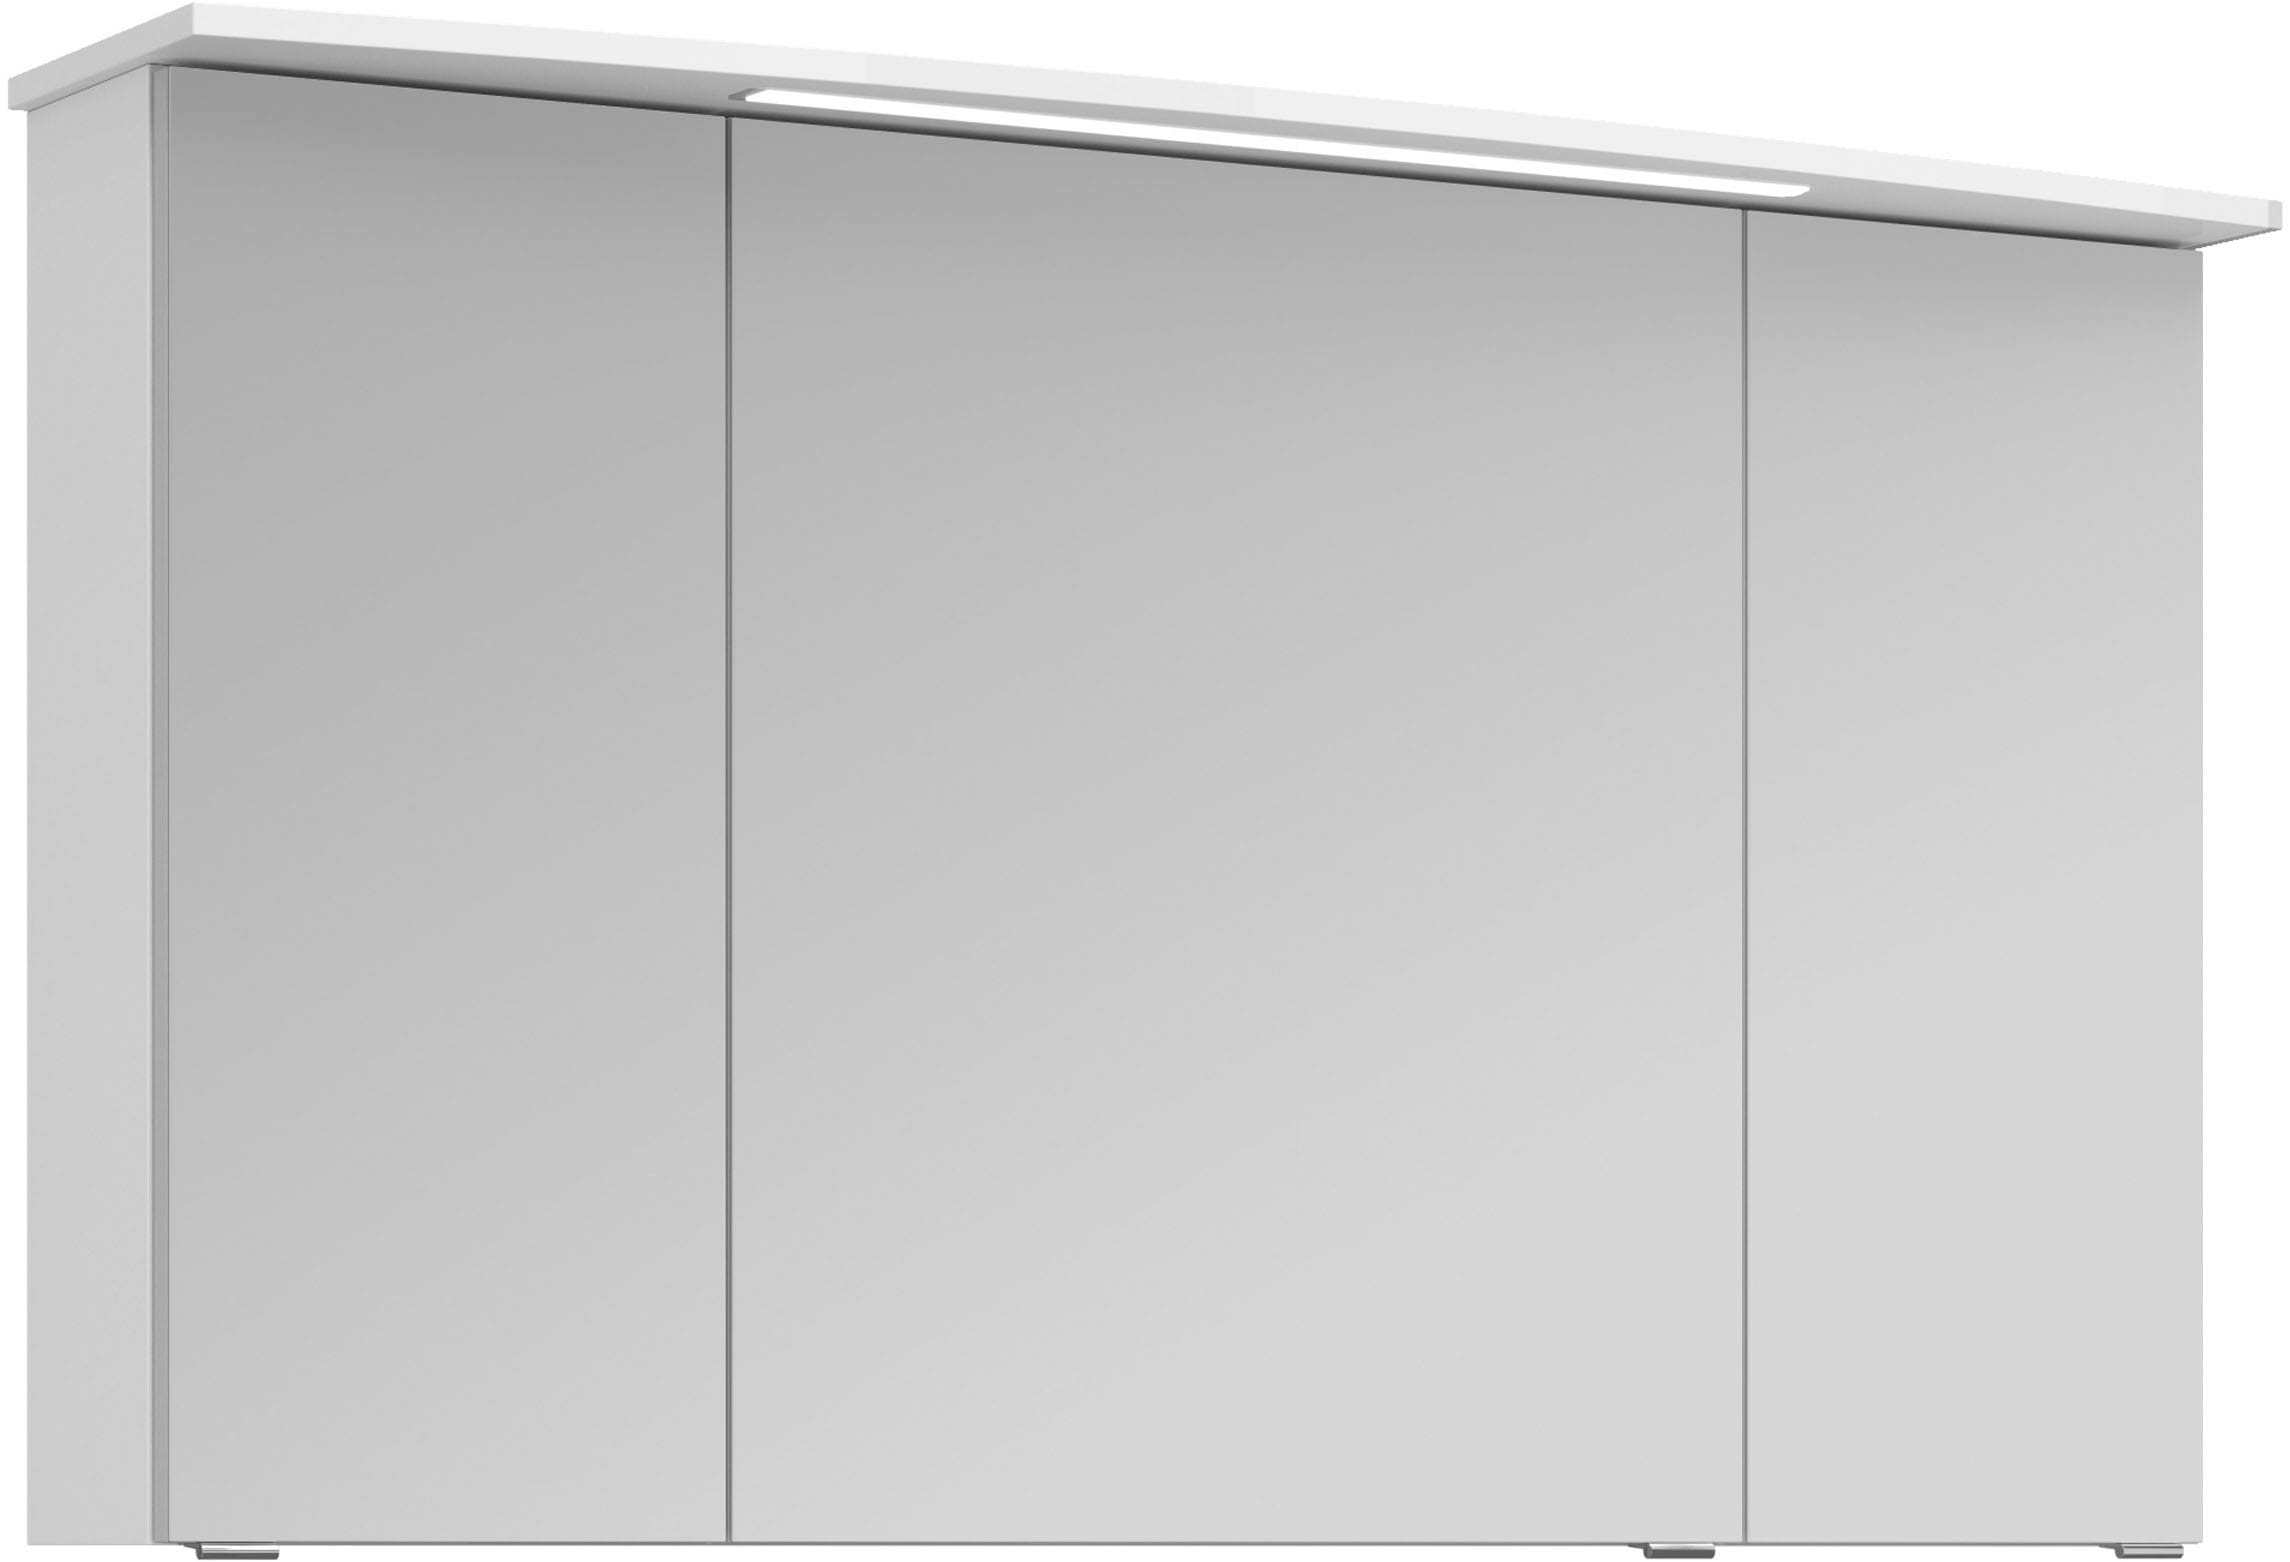 Saphir Badezimmerspiegelschrank "Serie 4010 Badezimmer-Spiegelschrank inkl. LED-Beleuchtung im Kranz", Badschrank 142 cm